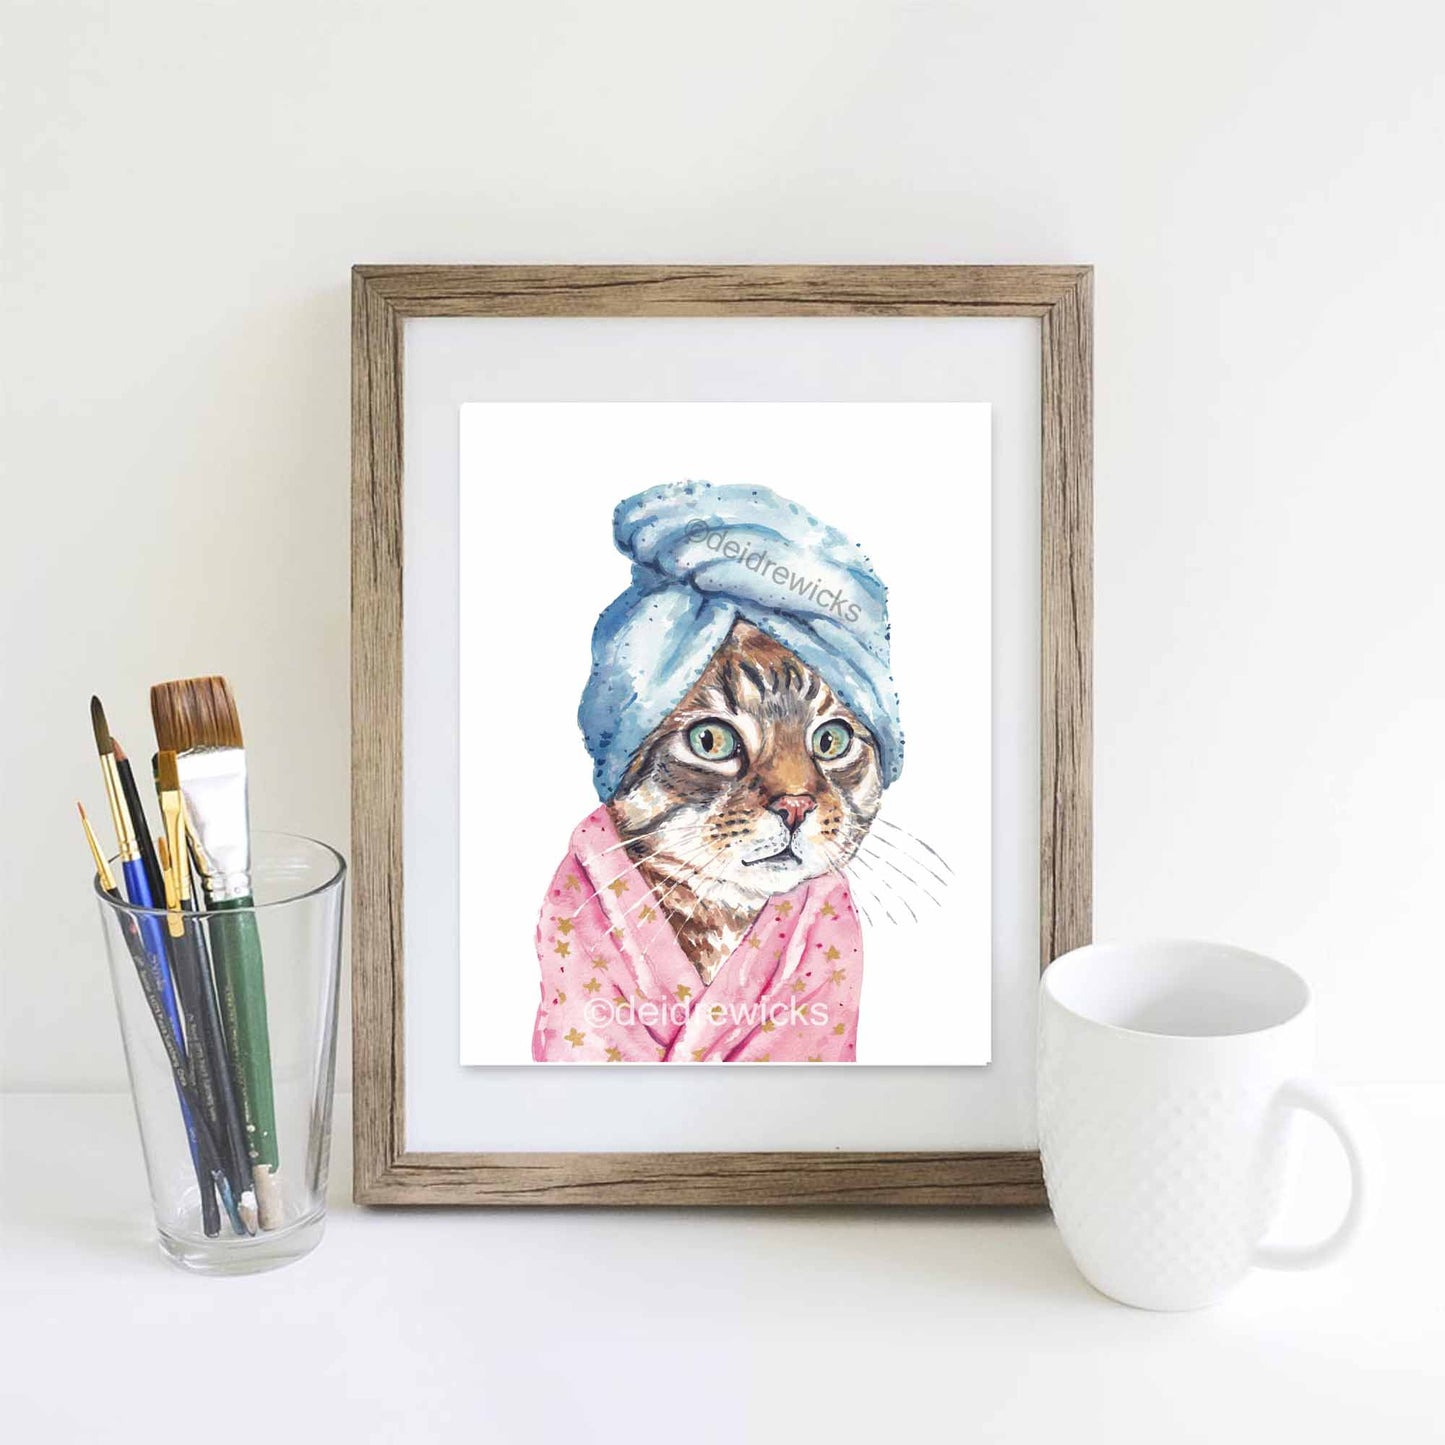 Framed cat watercolor print by Deidre Wicks